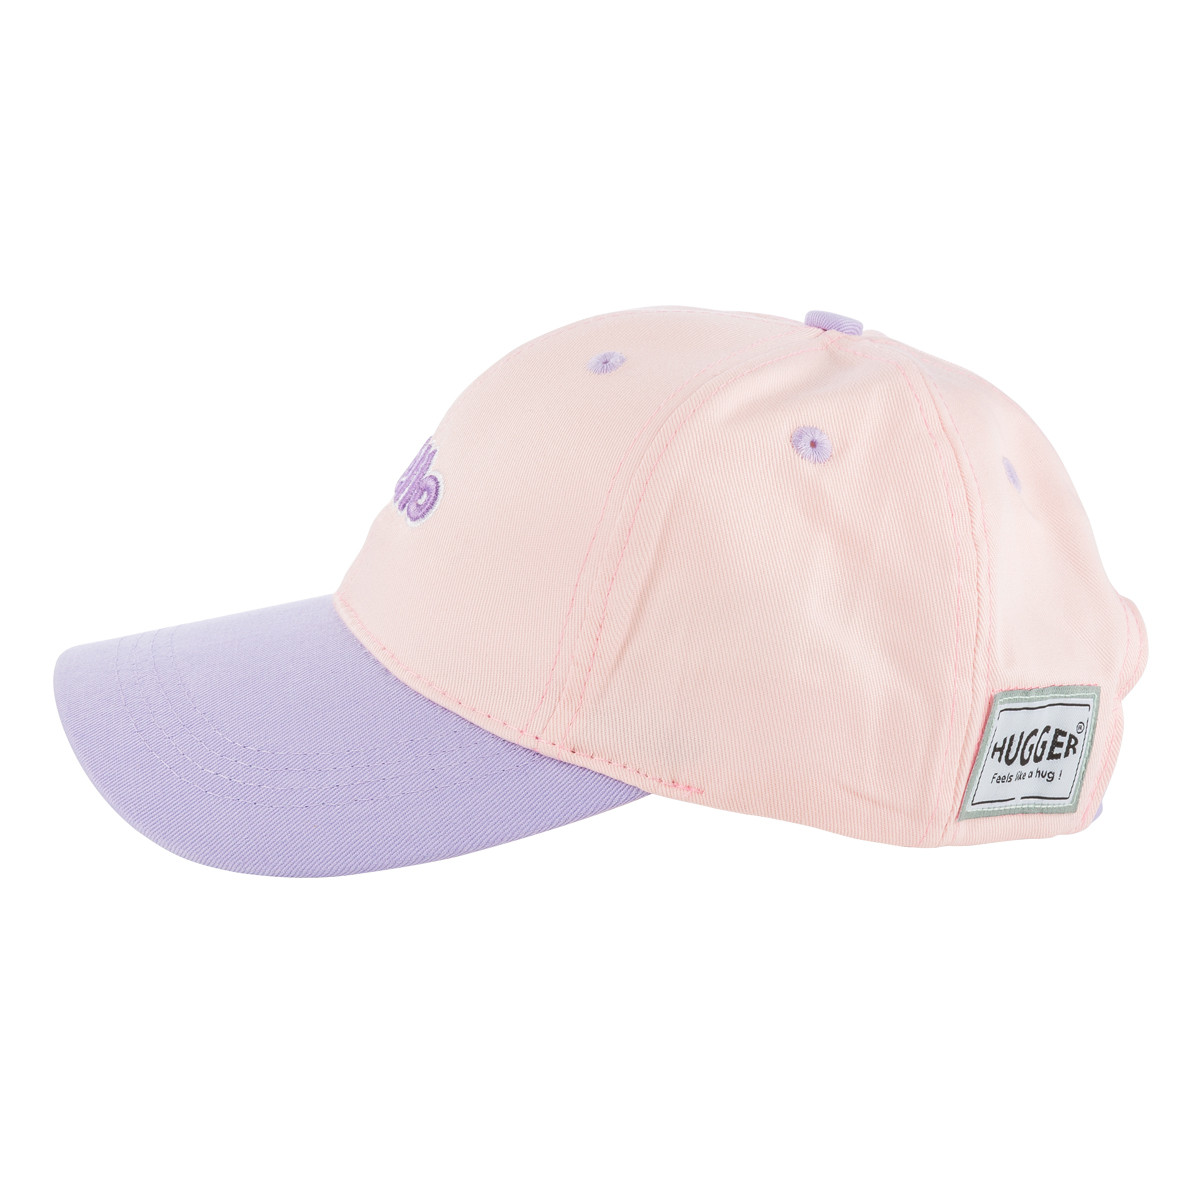 小文青撞色兒童棒球帽粉紫色側面